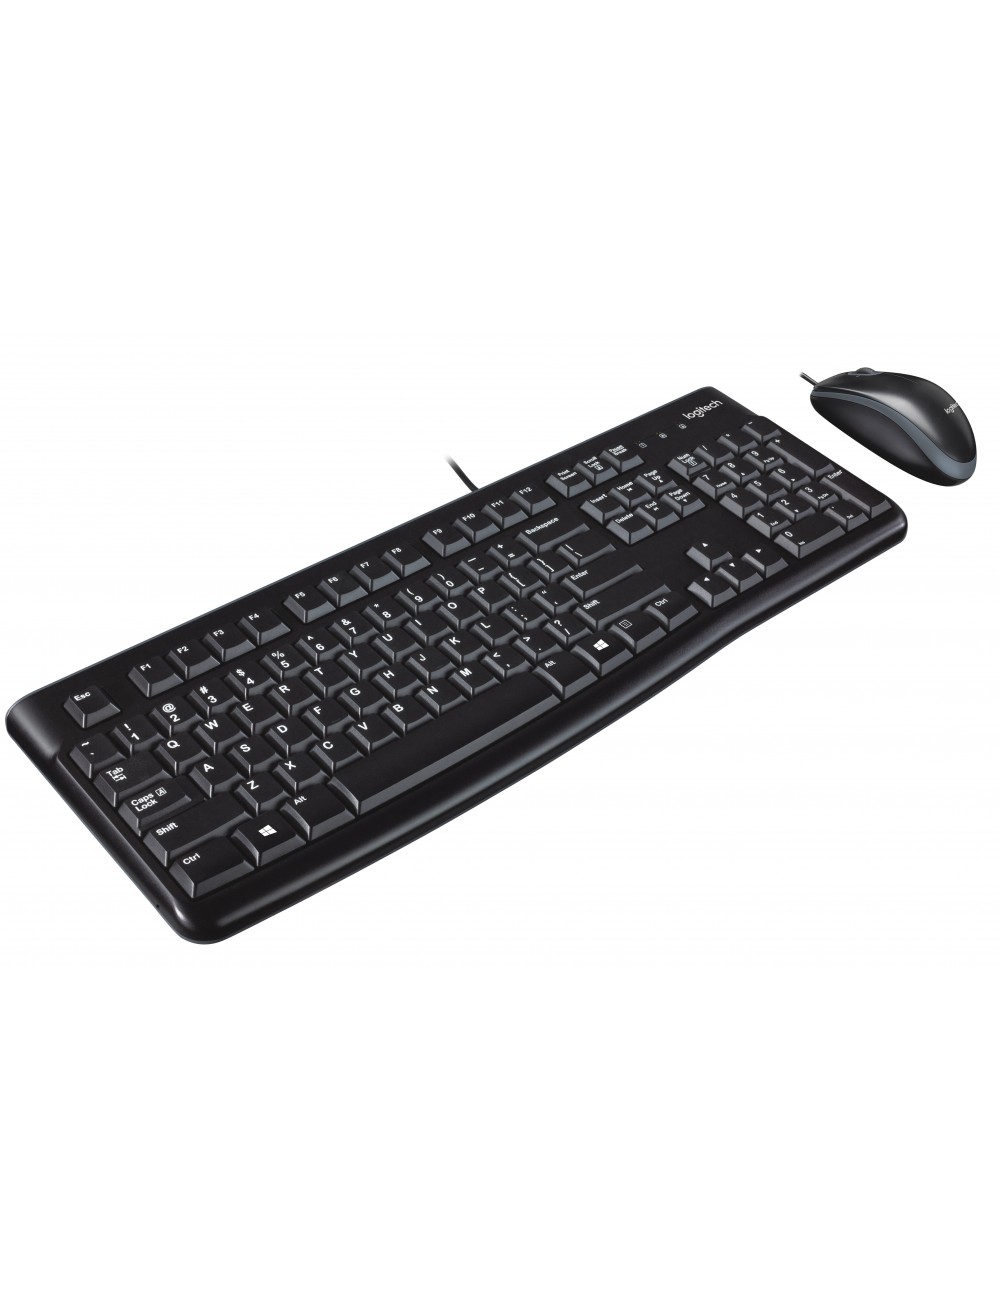 keyboard-mouse-logitech-mk120-us-920-002562-1.jpg